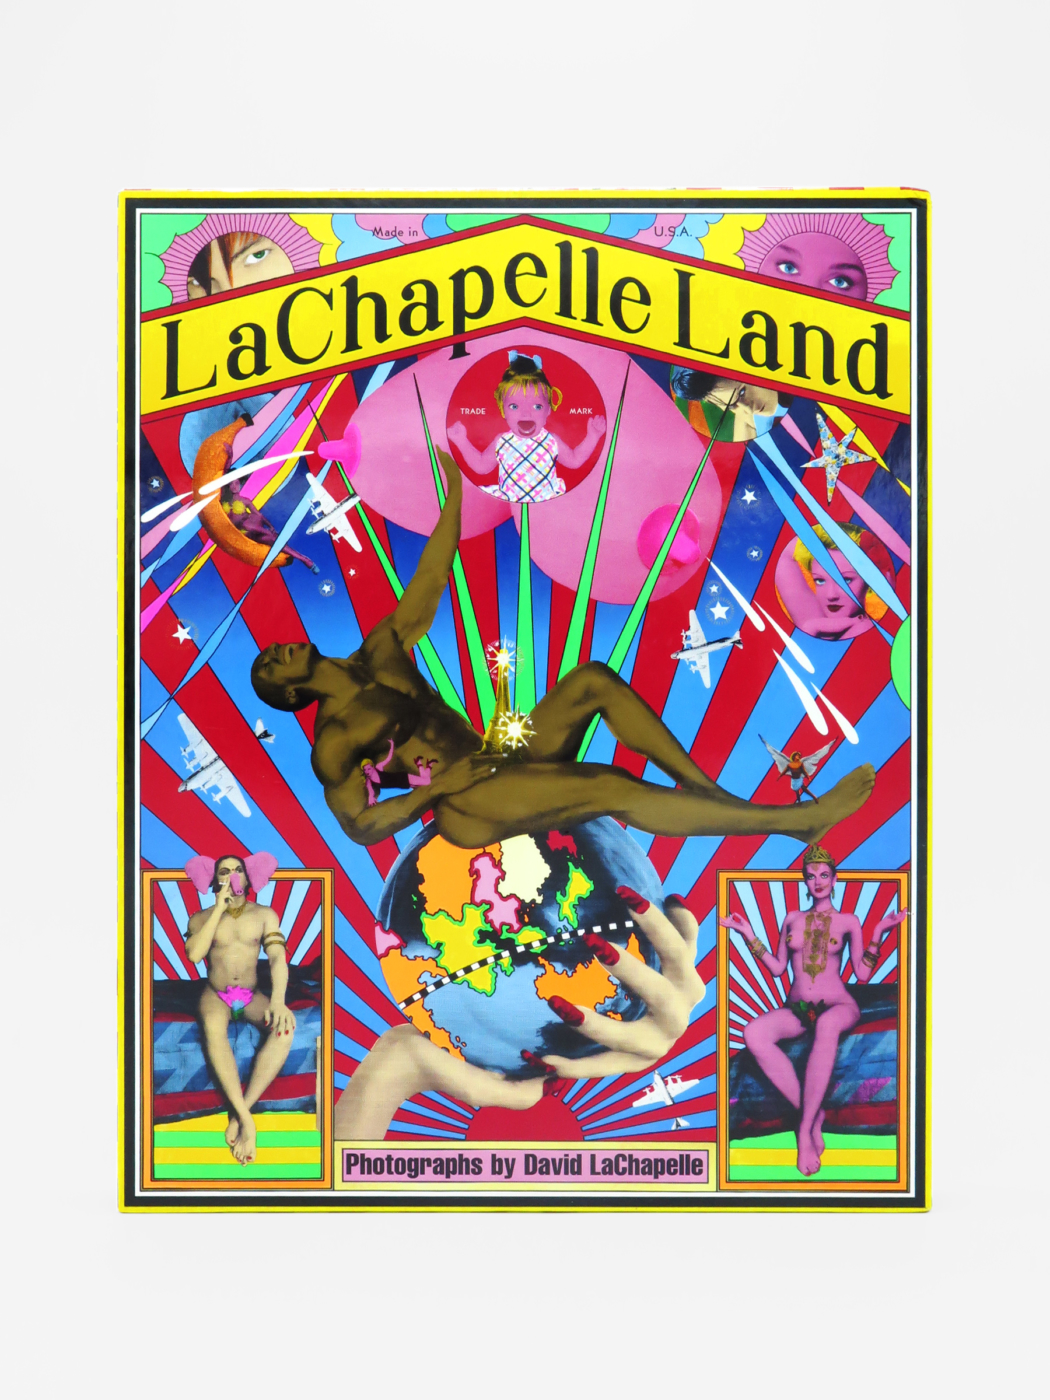 David LaChapelle, LaChapelle Land